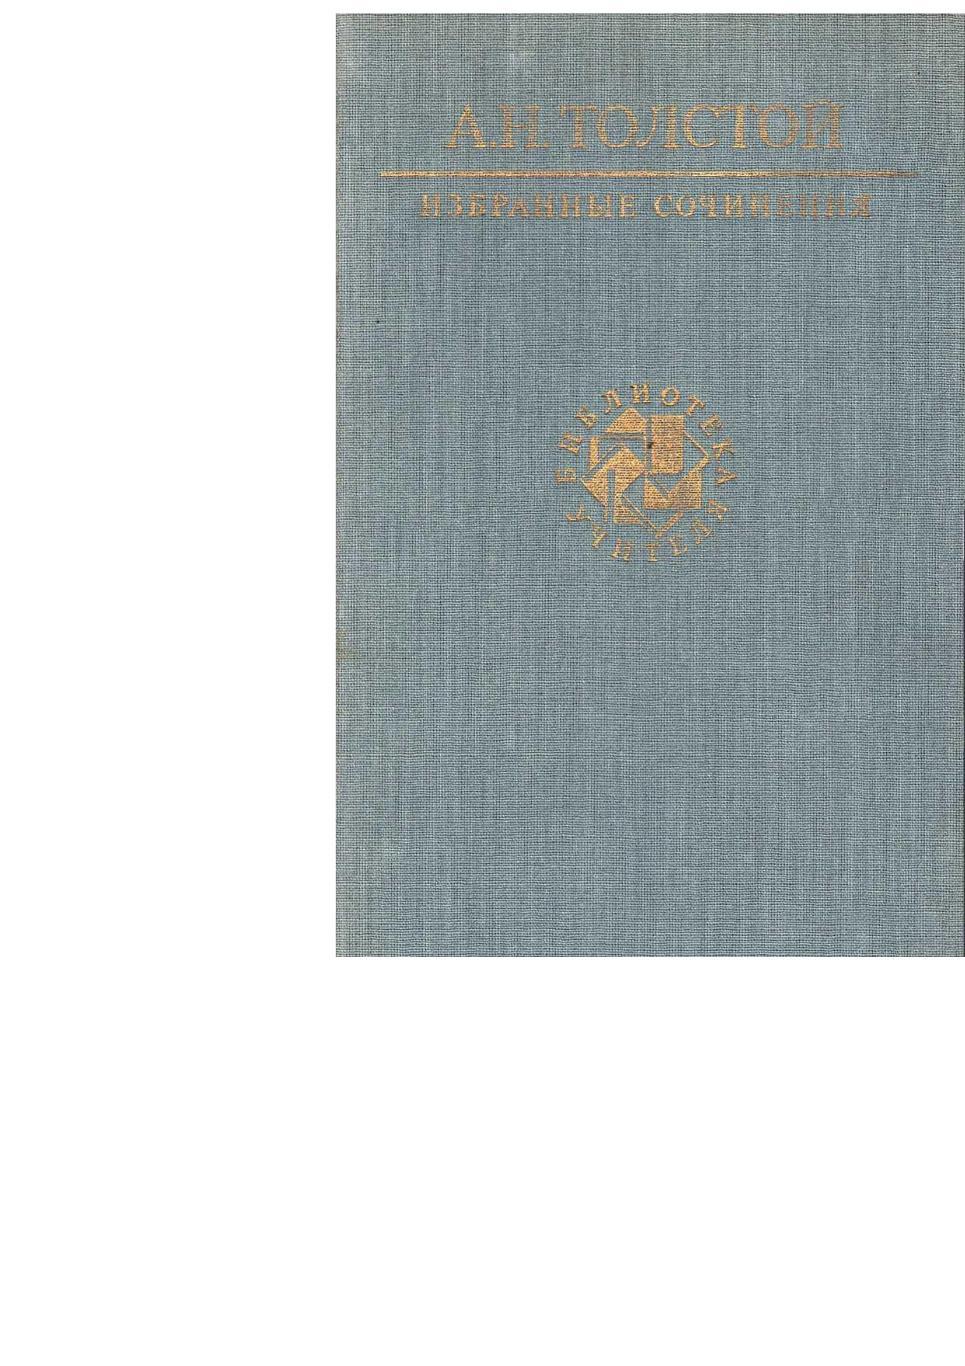 Толстой А.Н. Избранные сочинения. – М., 1990. Библиотека учителя.